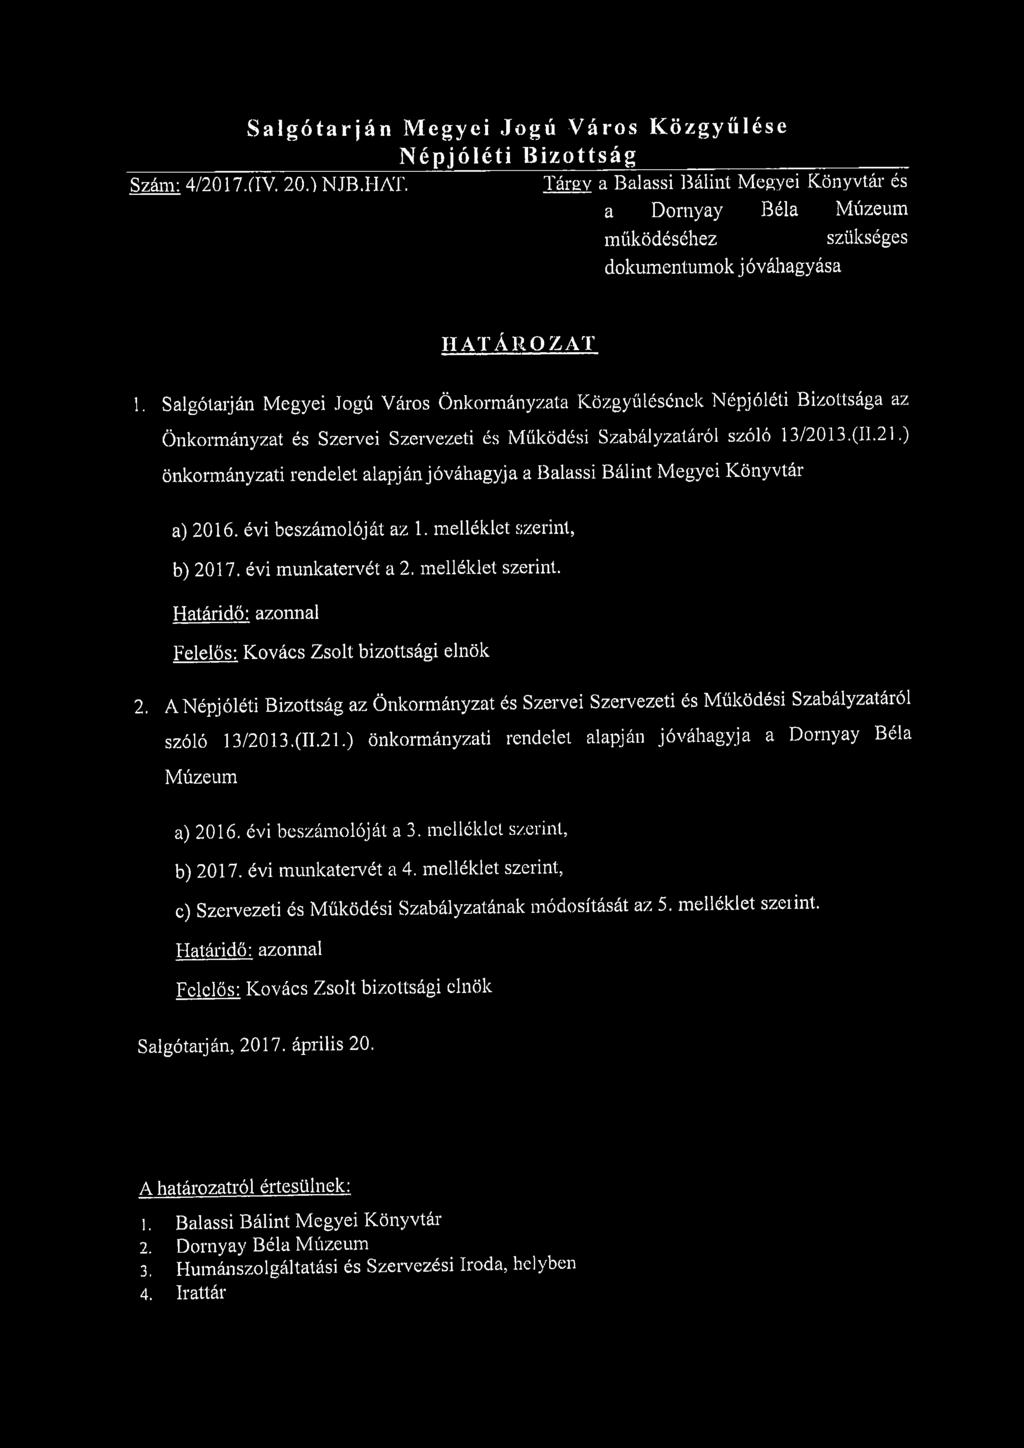 Salgótarján Megyei Jogú Város Önkormányzata Közgyűlésének Népjóléti Bizottsága az Önkormányzat és Szervei Szervezeti és Működési Szabályzatáról szóló 13/2013.(II.21.